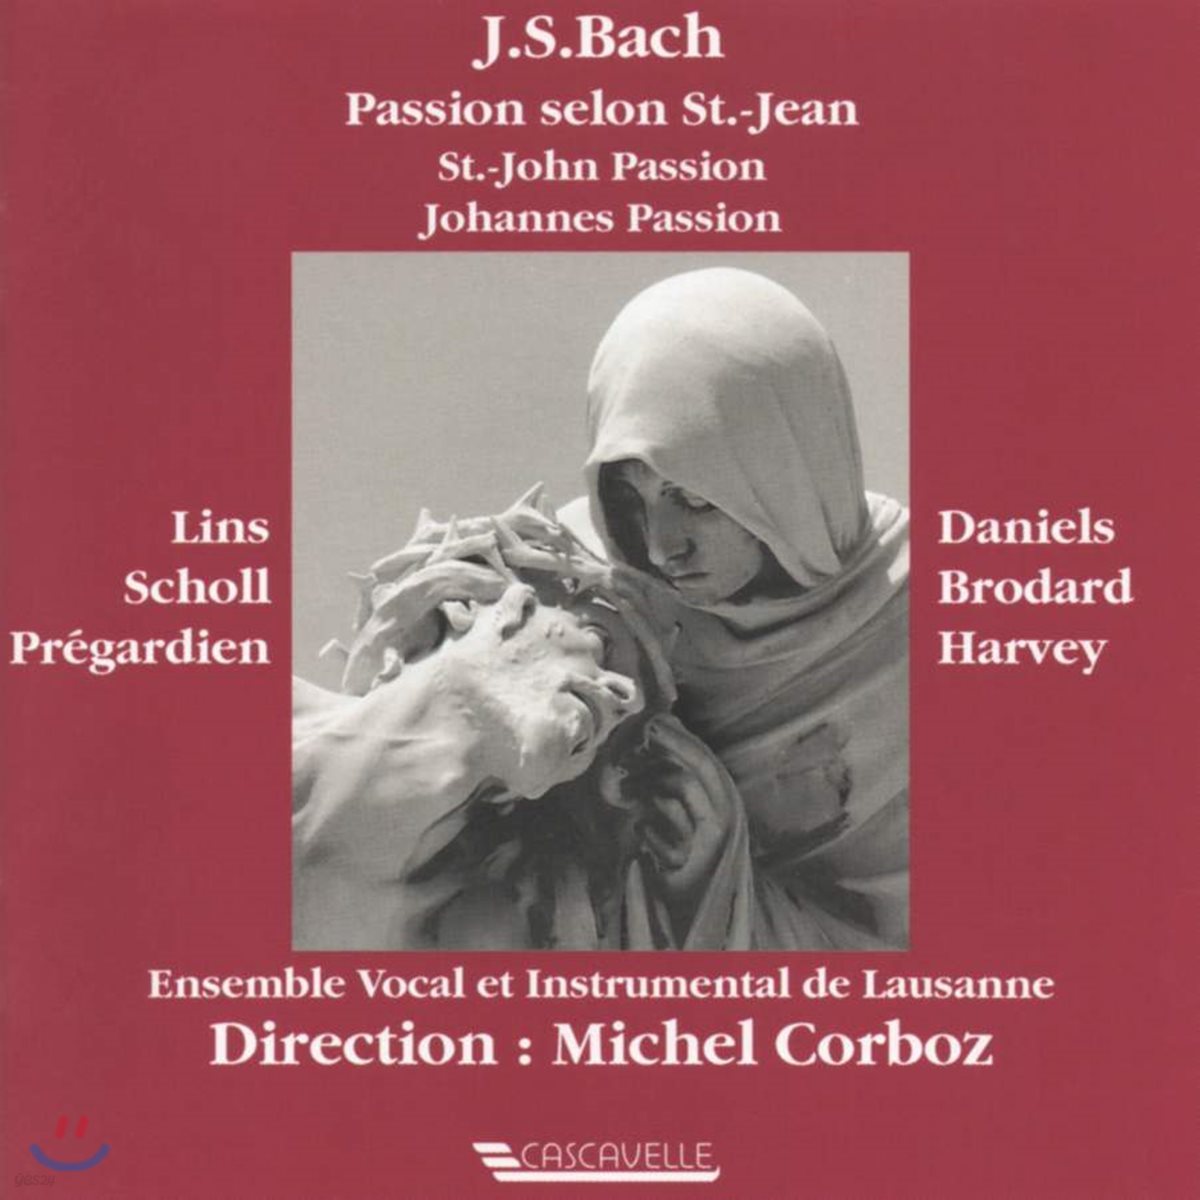 Michel Corboz 바흐: 요한 수난곡 (Bach: Johannes Passion) 